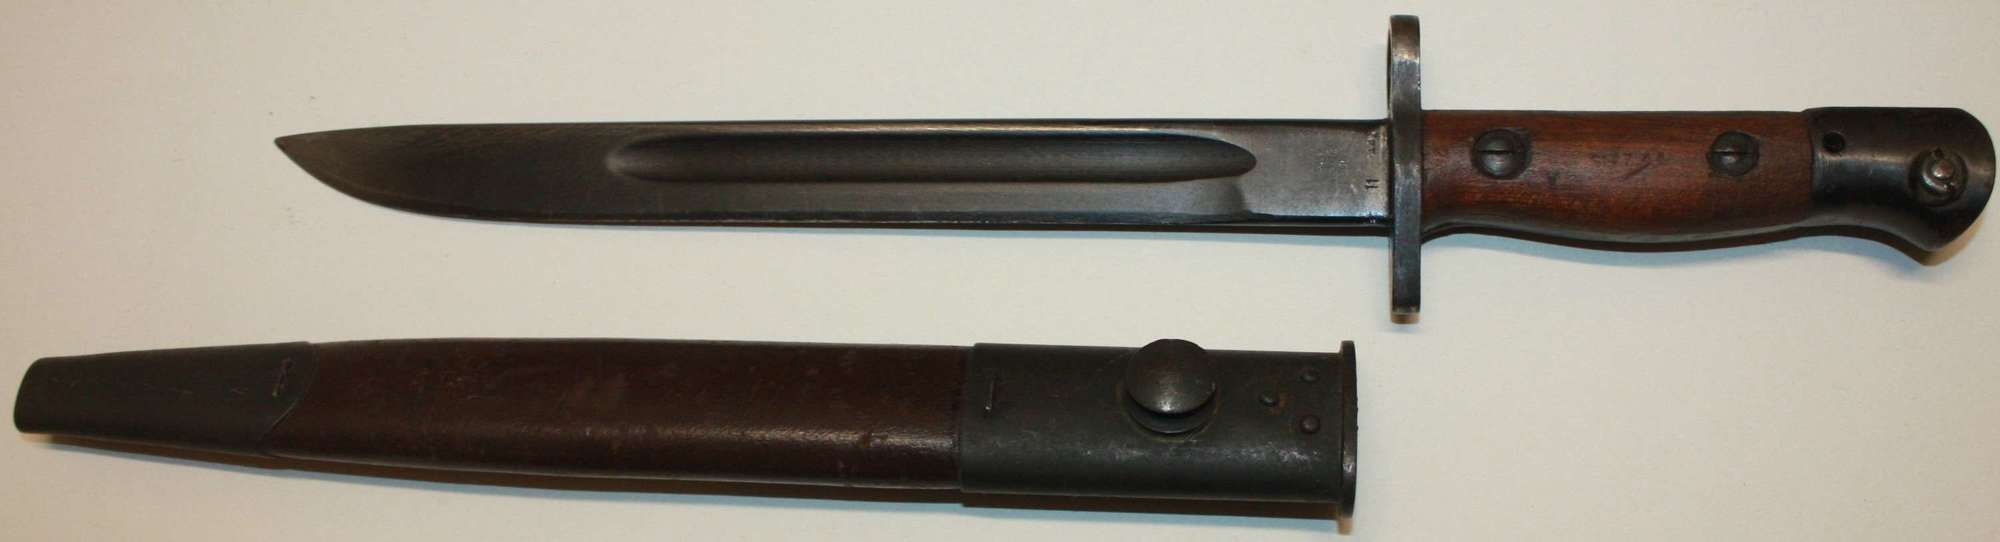 A GOOD ORANGE ARSNEL MADE 1944 DATED OWEN SUBMACHINE GUN BAYONET